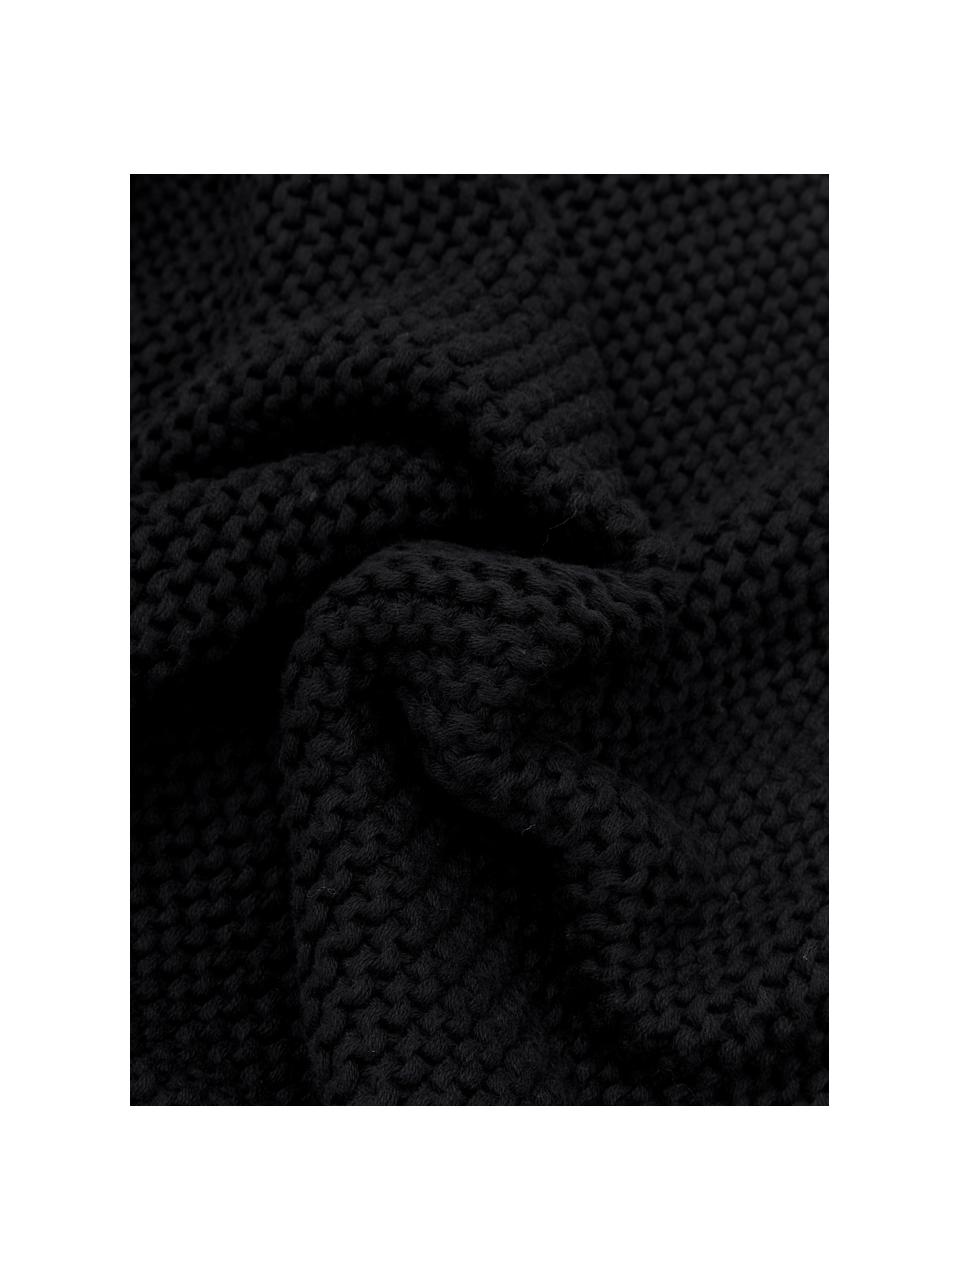 Gebreide kussenhoes Adalyn van biokatoen in zwart, 100% katoen, Zwart, B 40 x L 40 cm